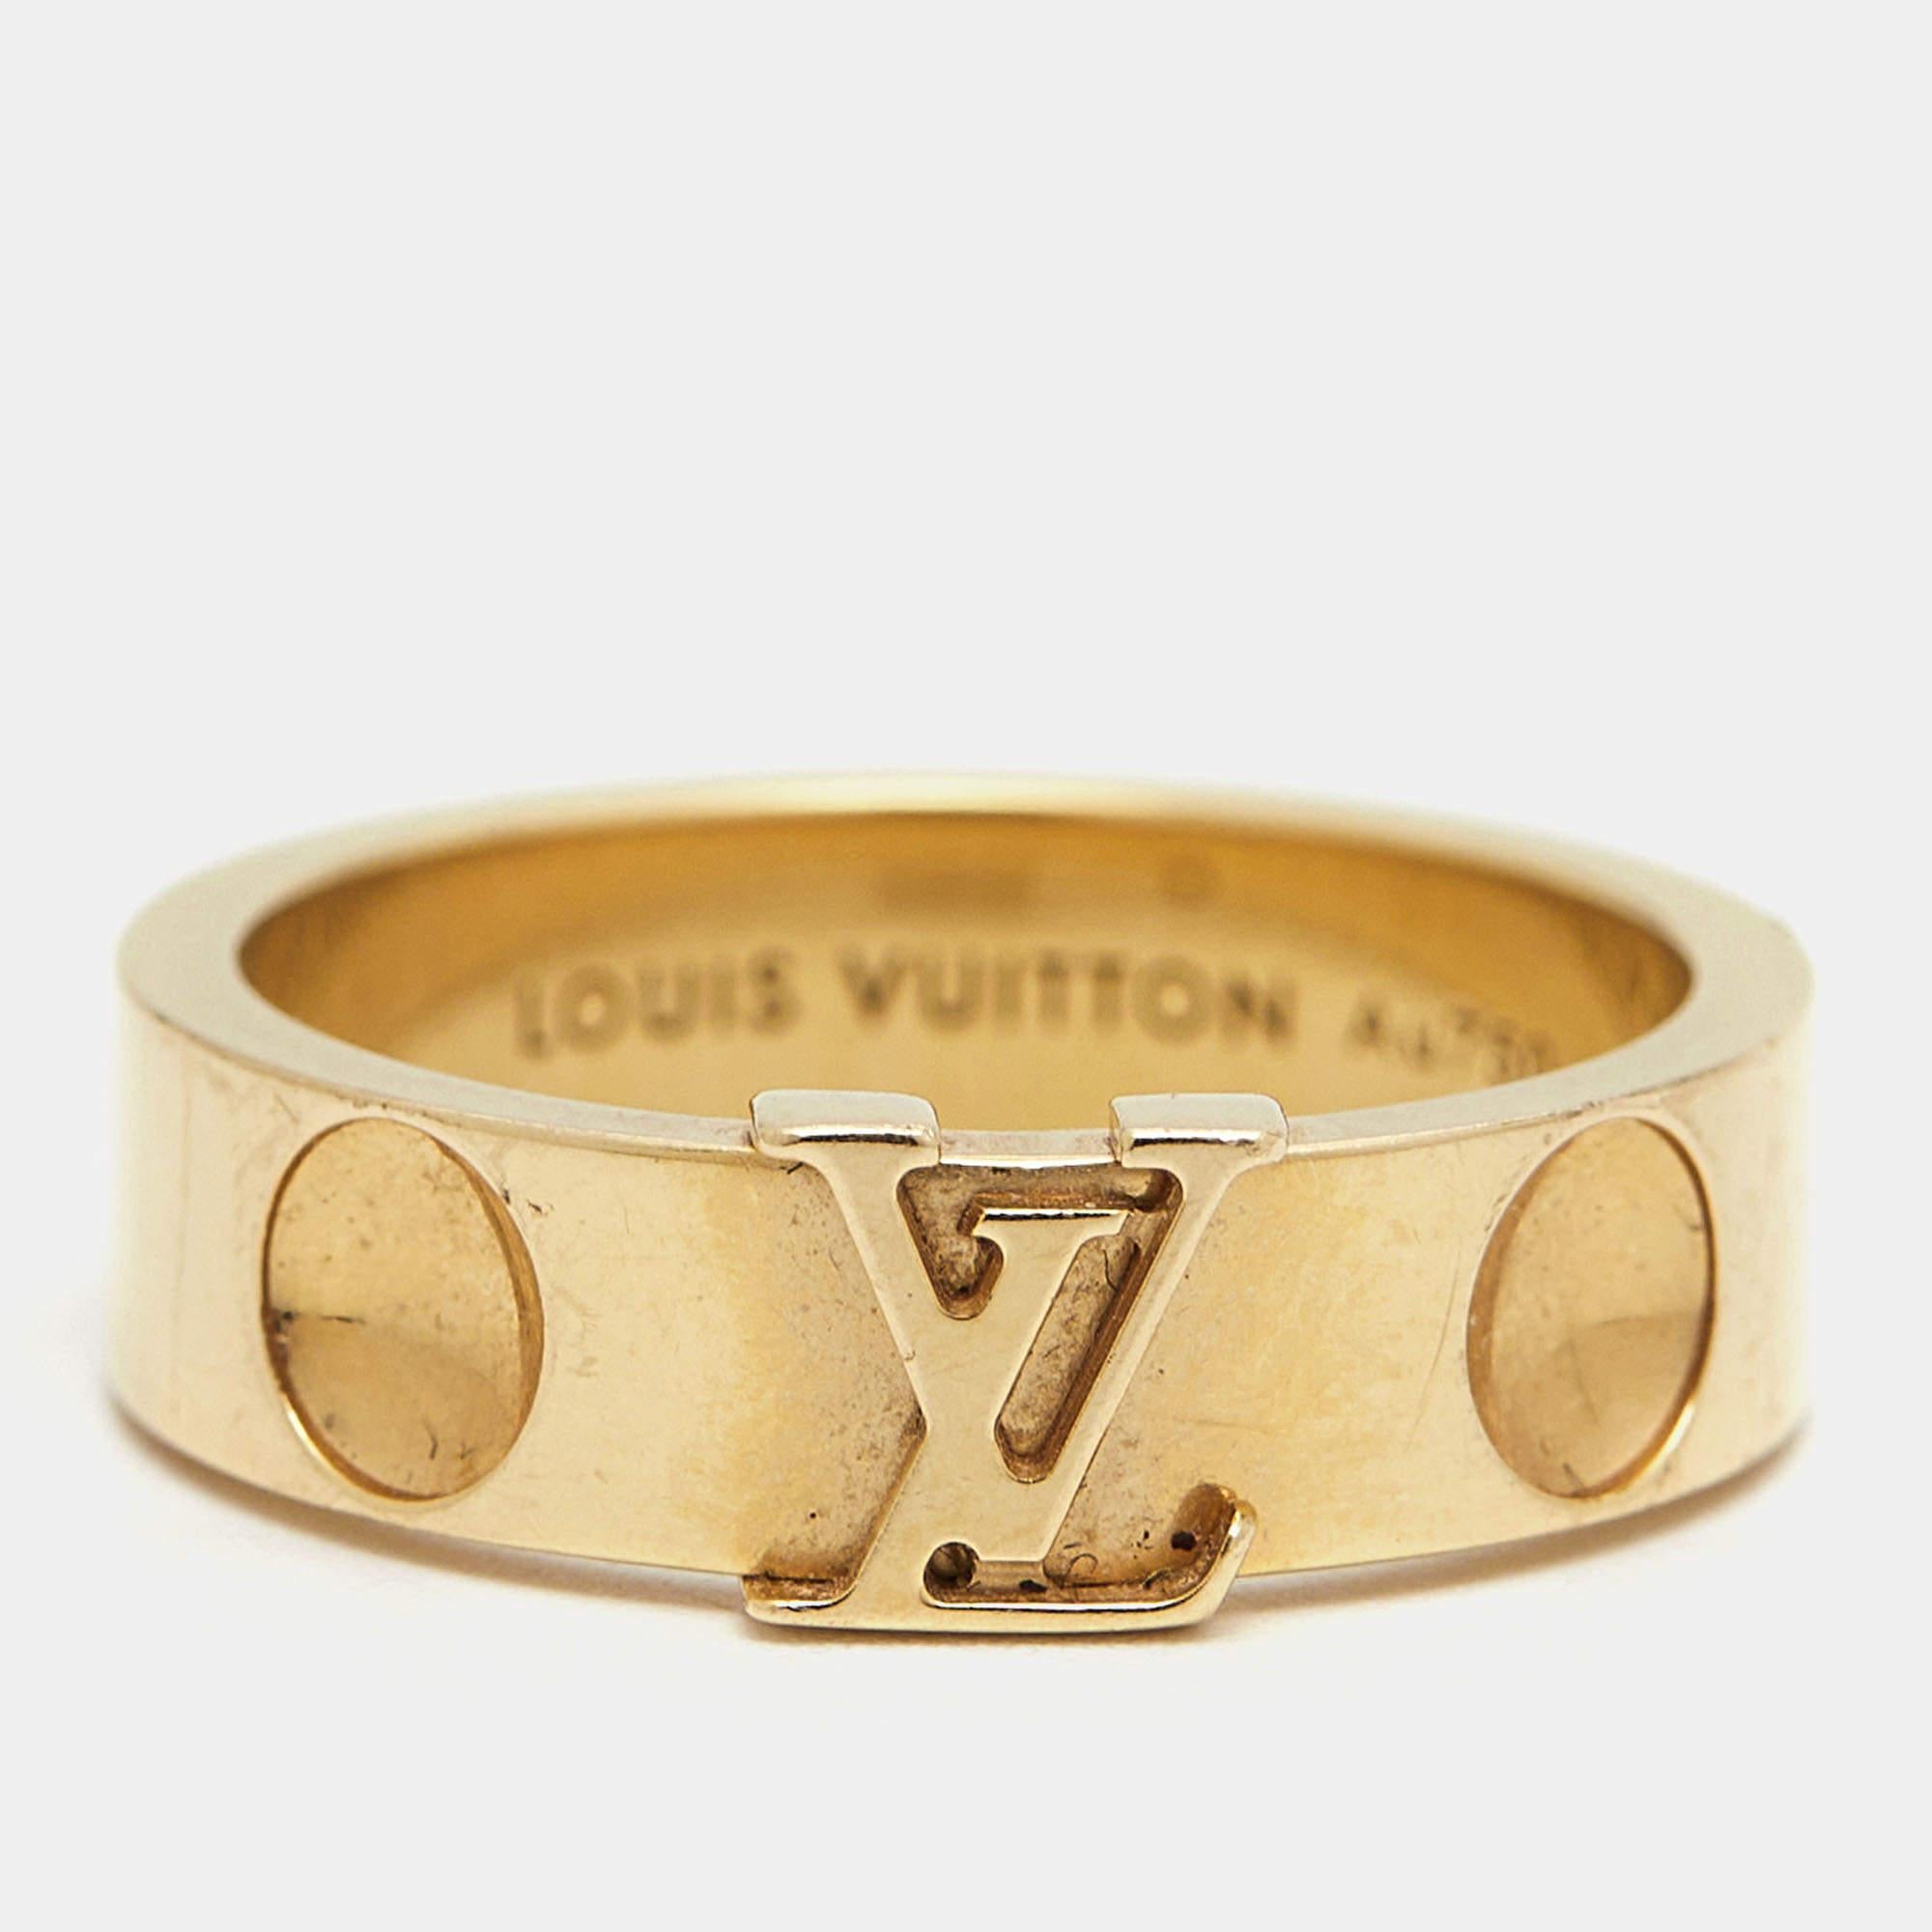 Fabriquée avec précision et opulence, la bague Louis Vuitton respire l'élégance intemporelle. Ses courbes délicates embrassent un brillant déploiement d'or jaune 18 carats, orné de l'emblématique emblème LV méticuleusement placé. Symbole d'un luxe